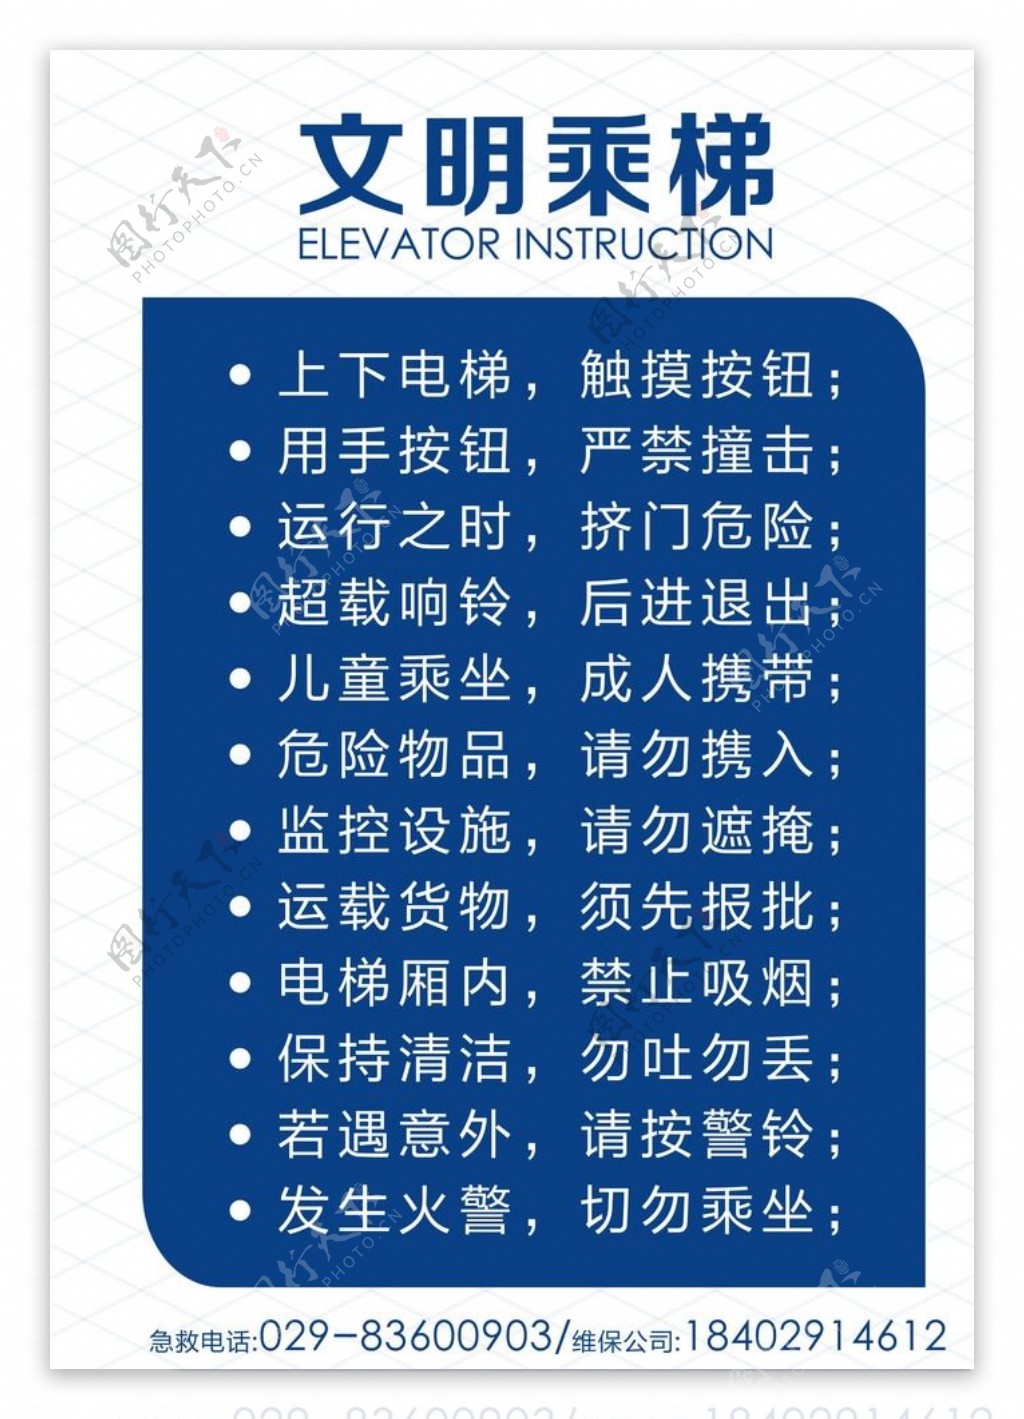 乘电梯电梯标志电梯须